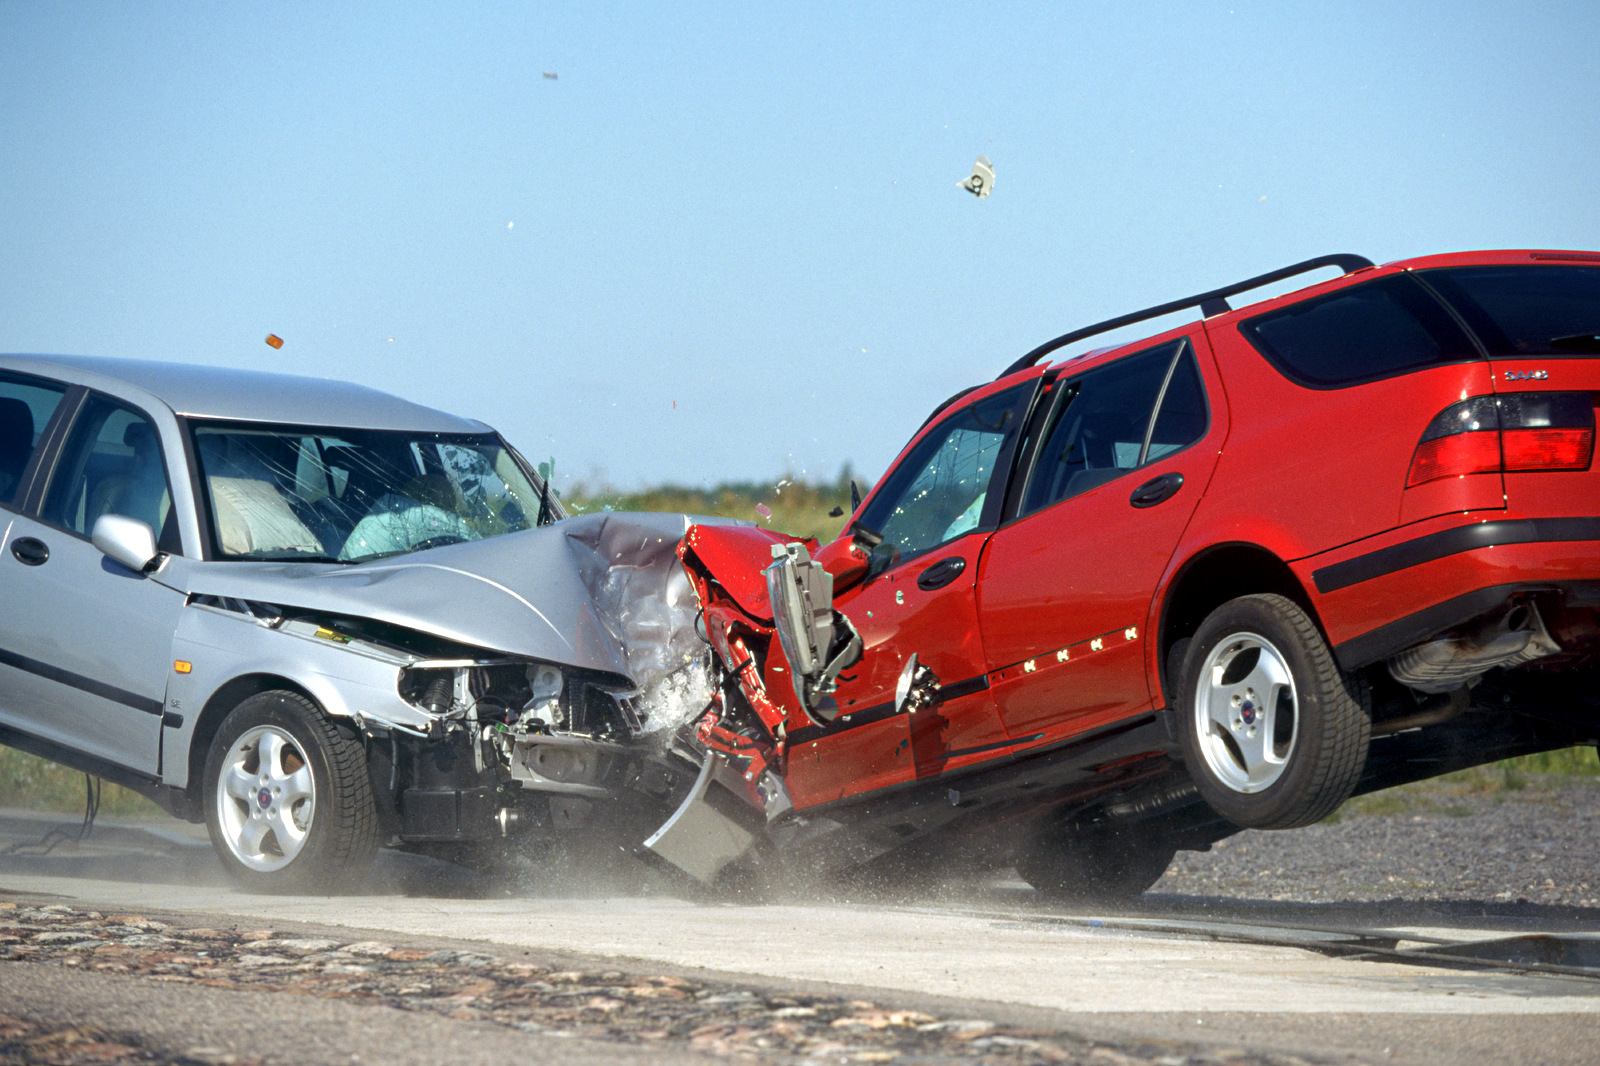 מערכות בטיחות יסייעו להפחית את התאונות?